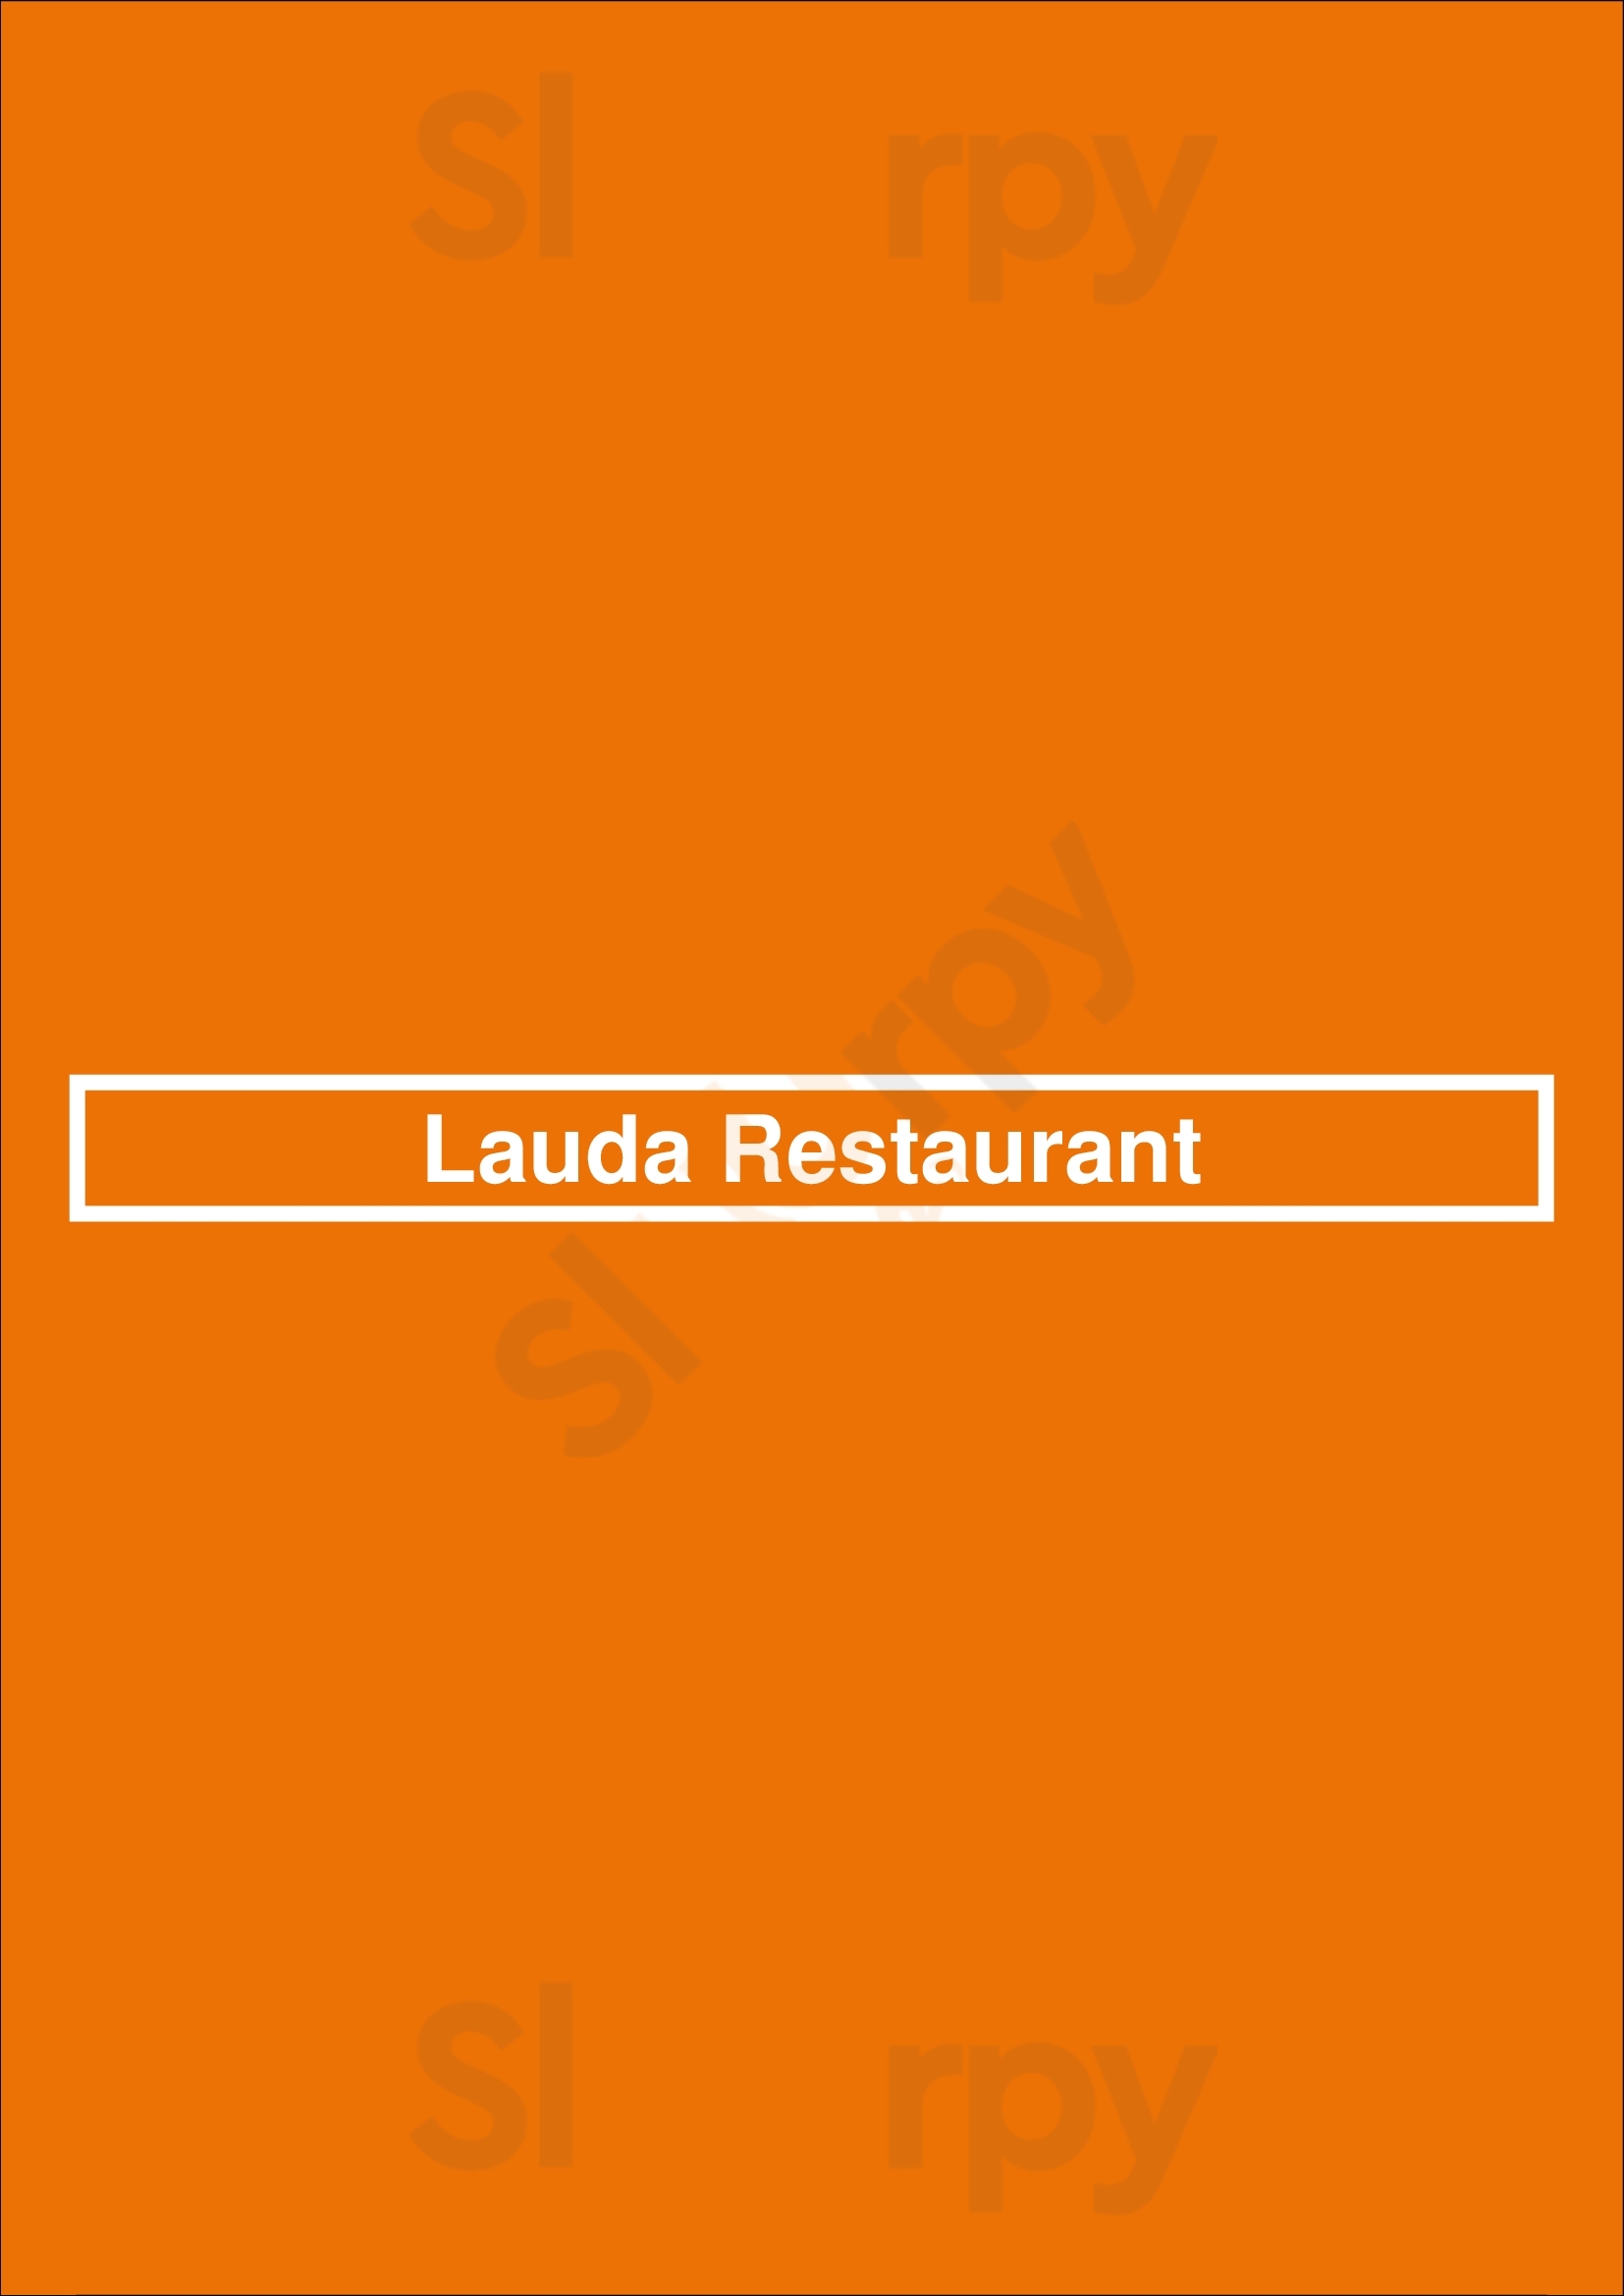 Lauda Restaurant Οία Menu - 1